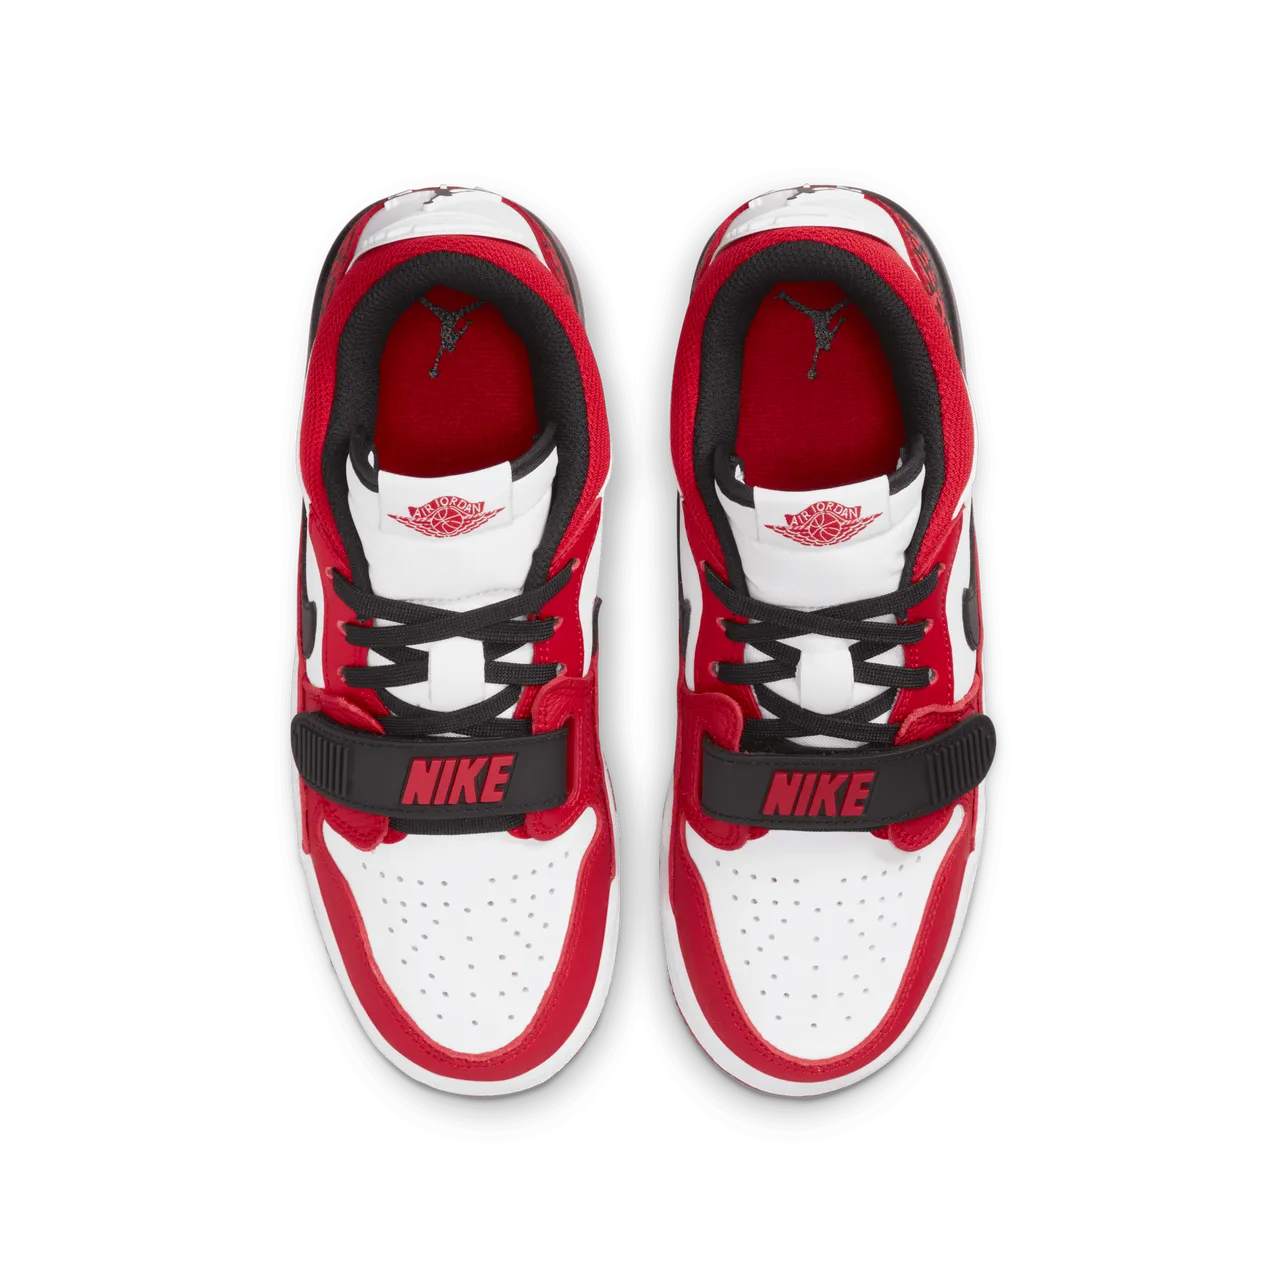 Air Jordan Legacy 312 Low Older Kids' Shoes - White